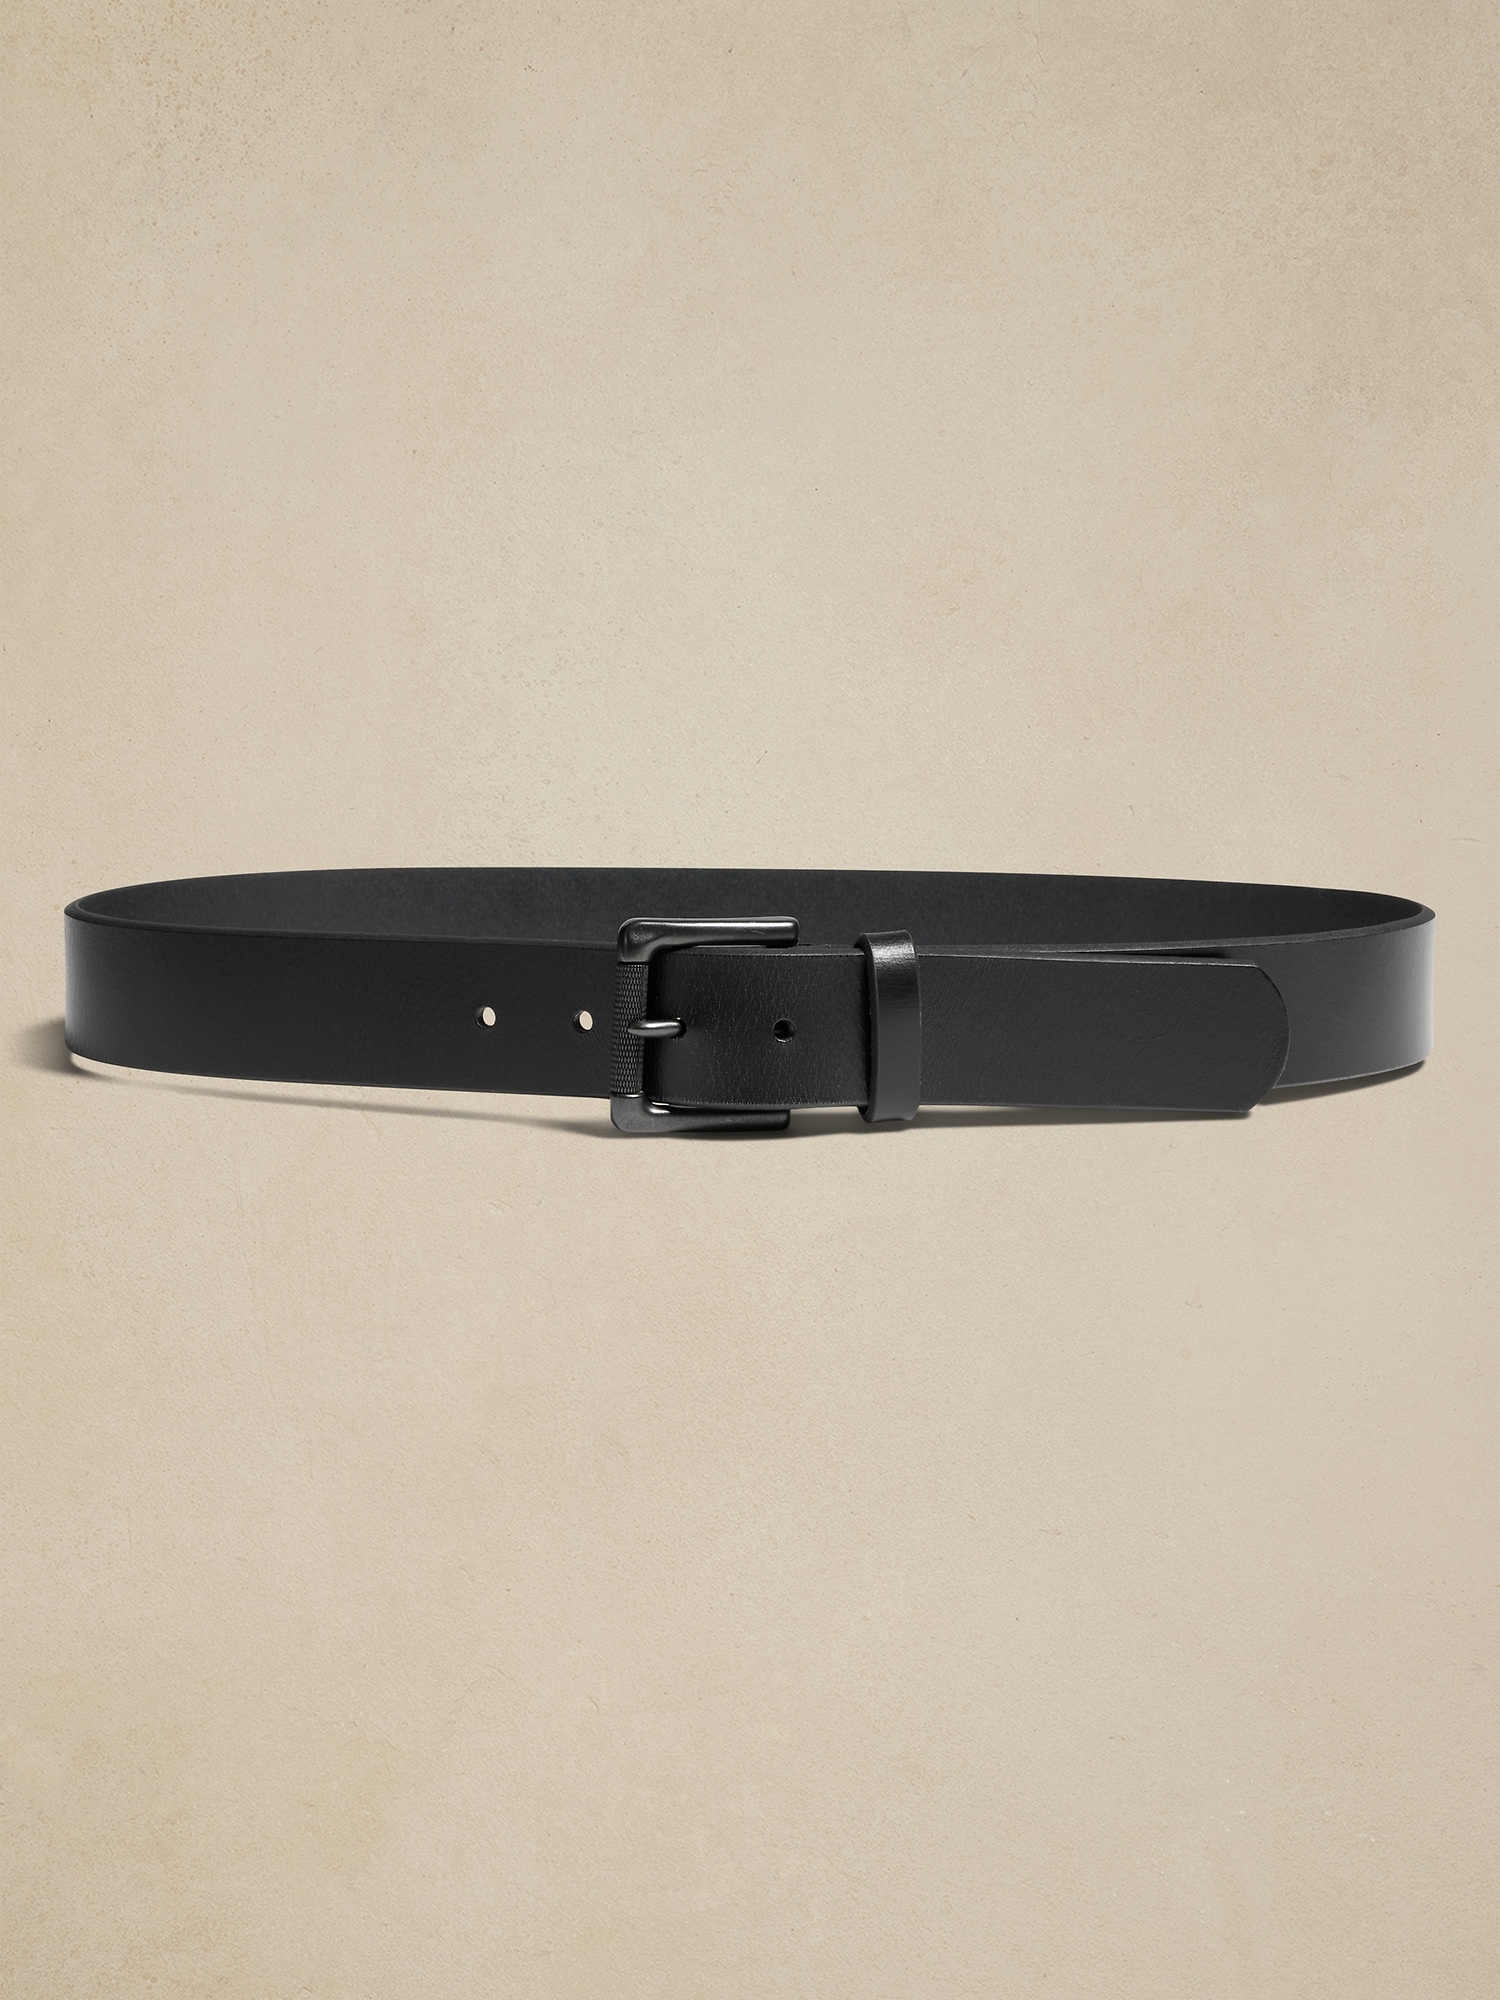 Black Smooth Leather Belt, Hudson Buckle (Gold)